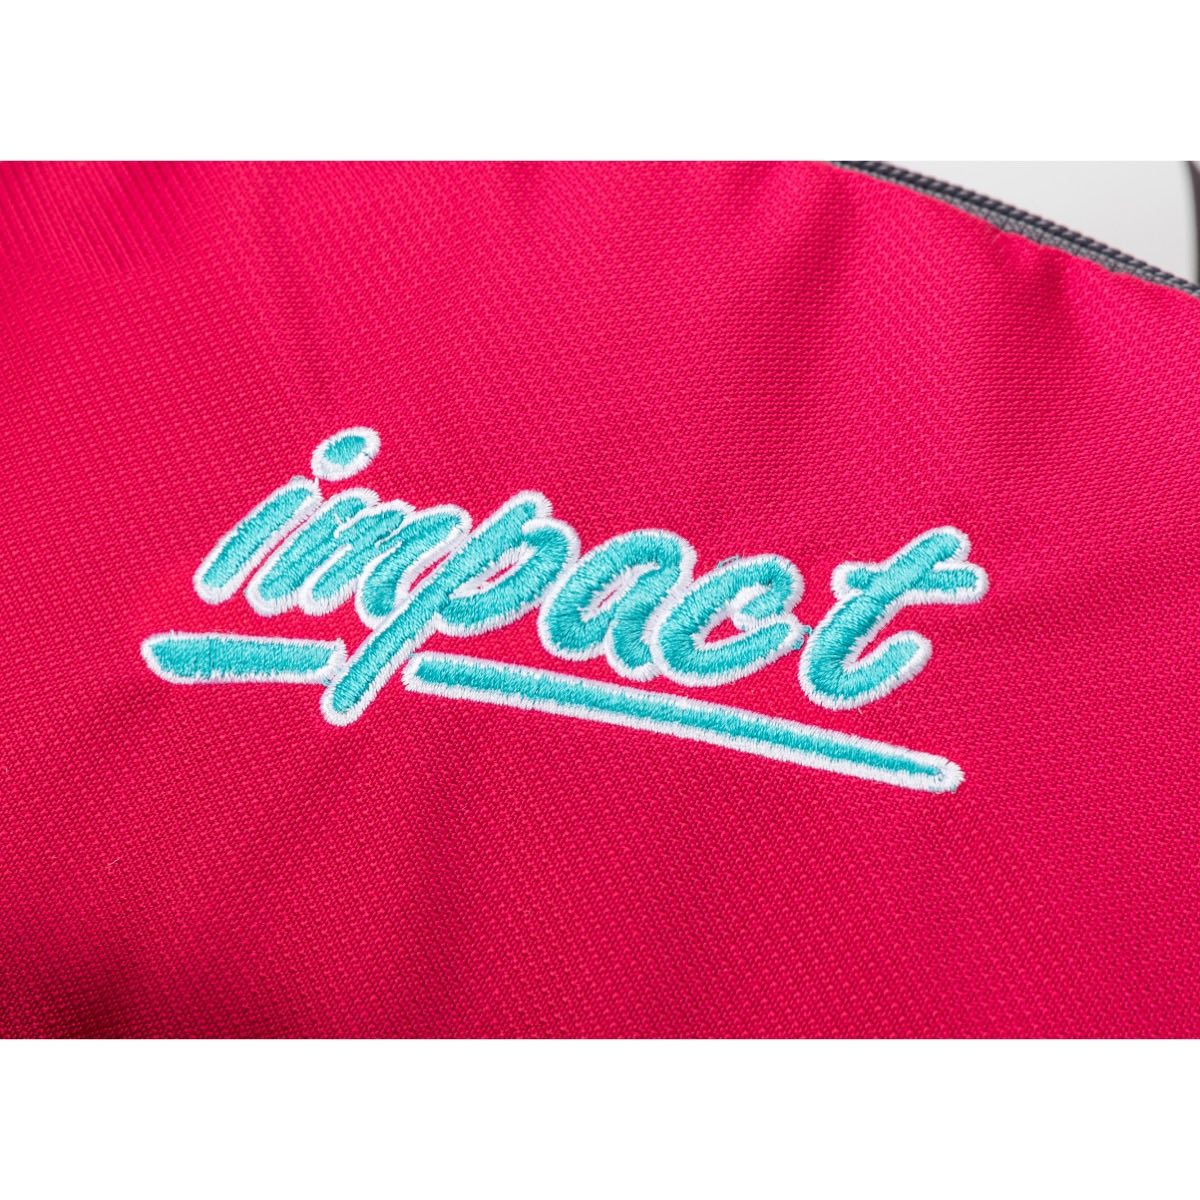 Impact School Bag IM-00H06 - Junior Ergo Backpack